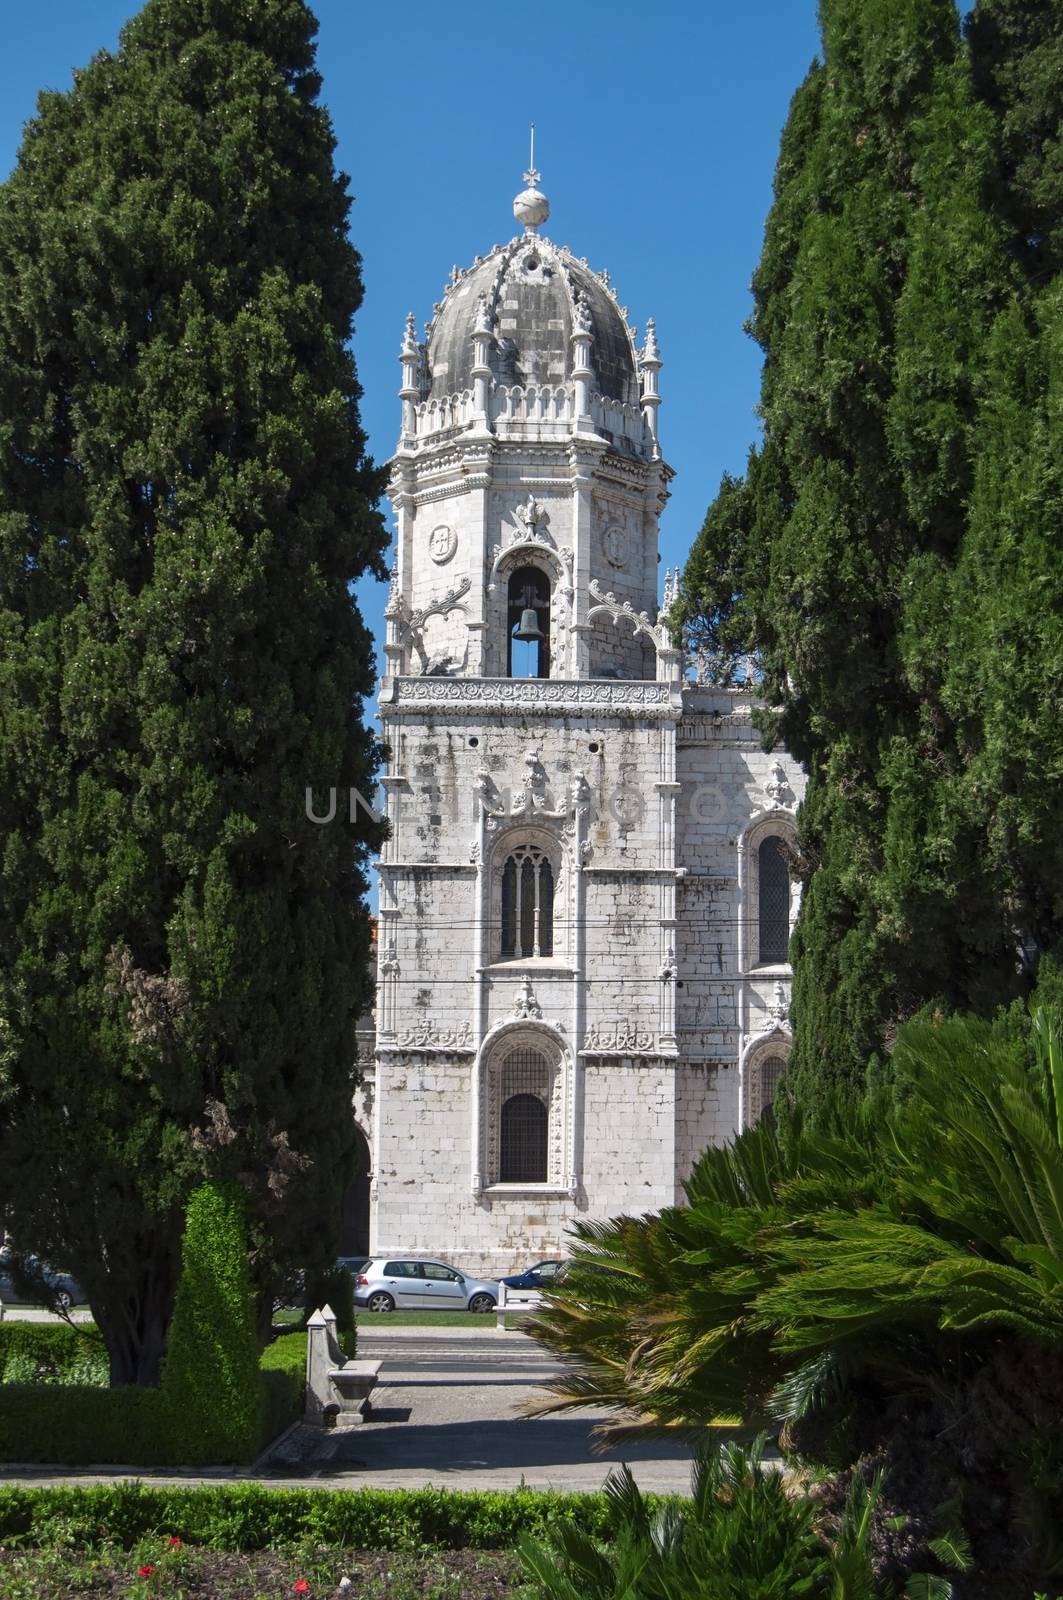 Lisbon Jeronimos Monastery by tony4urban